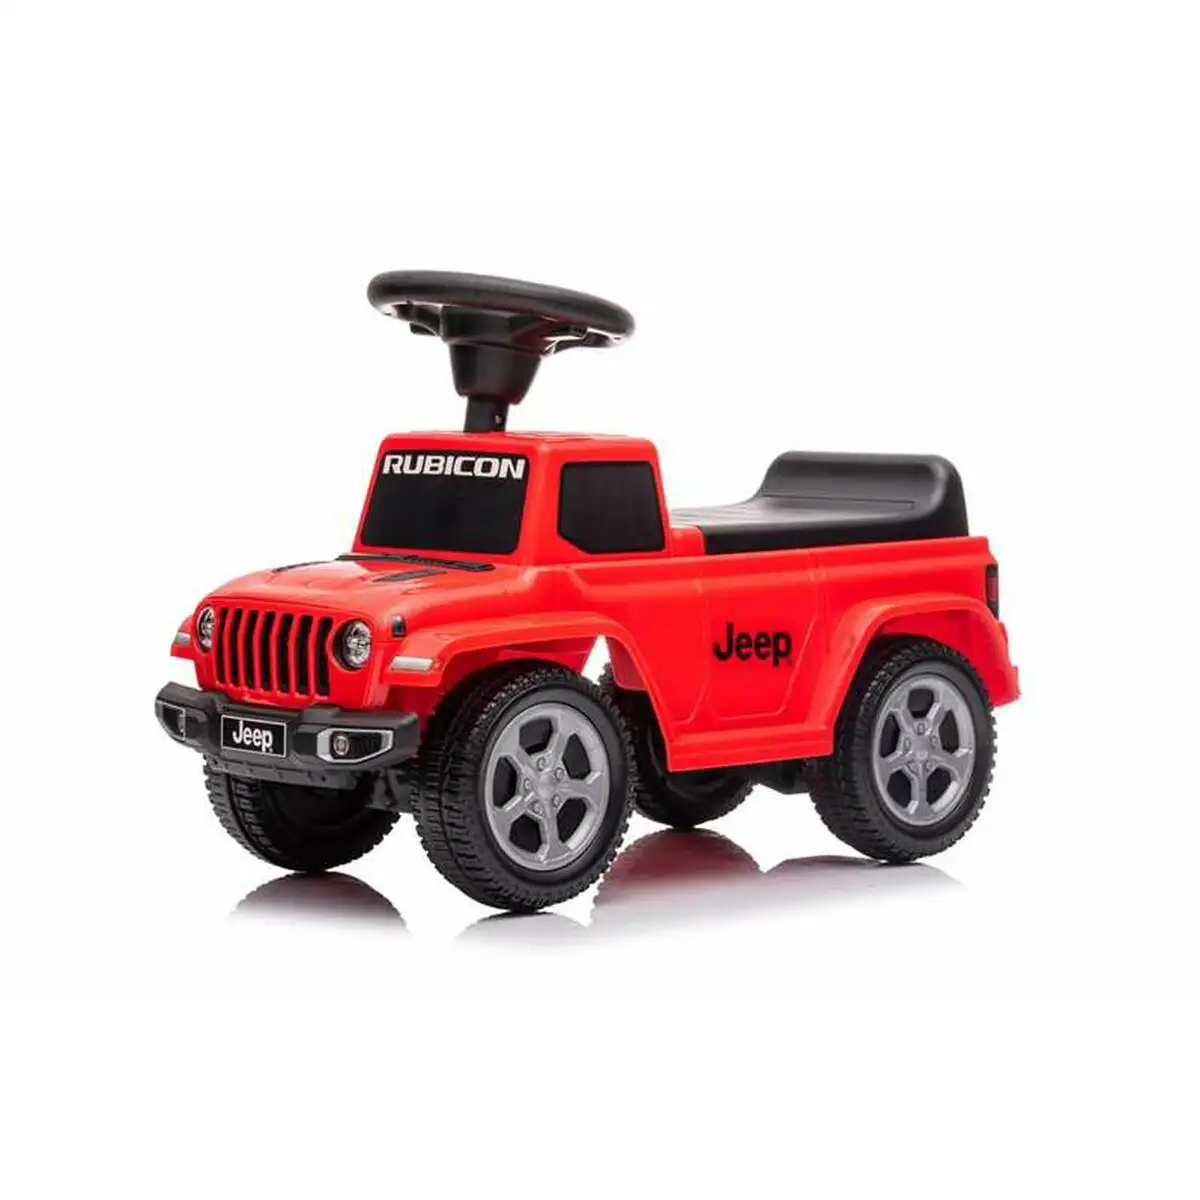 Tricycle jeep gladiator rouge_9268. DIAYTAR SENEGAL - Votre Destination pour un Shopping Inégalé. Naviguez à travers notre sélection minutieuse pour trouver des produits qui répondent à tous vos besoins.